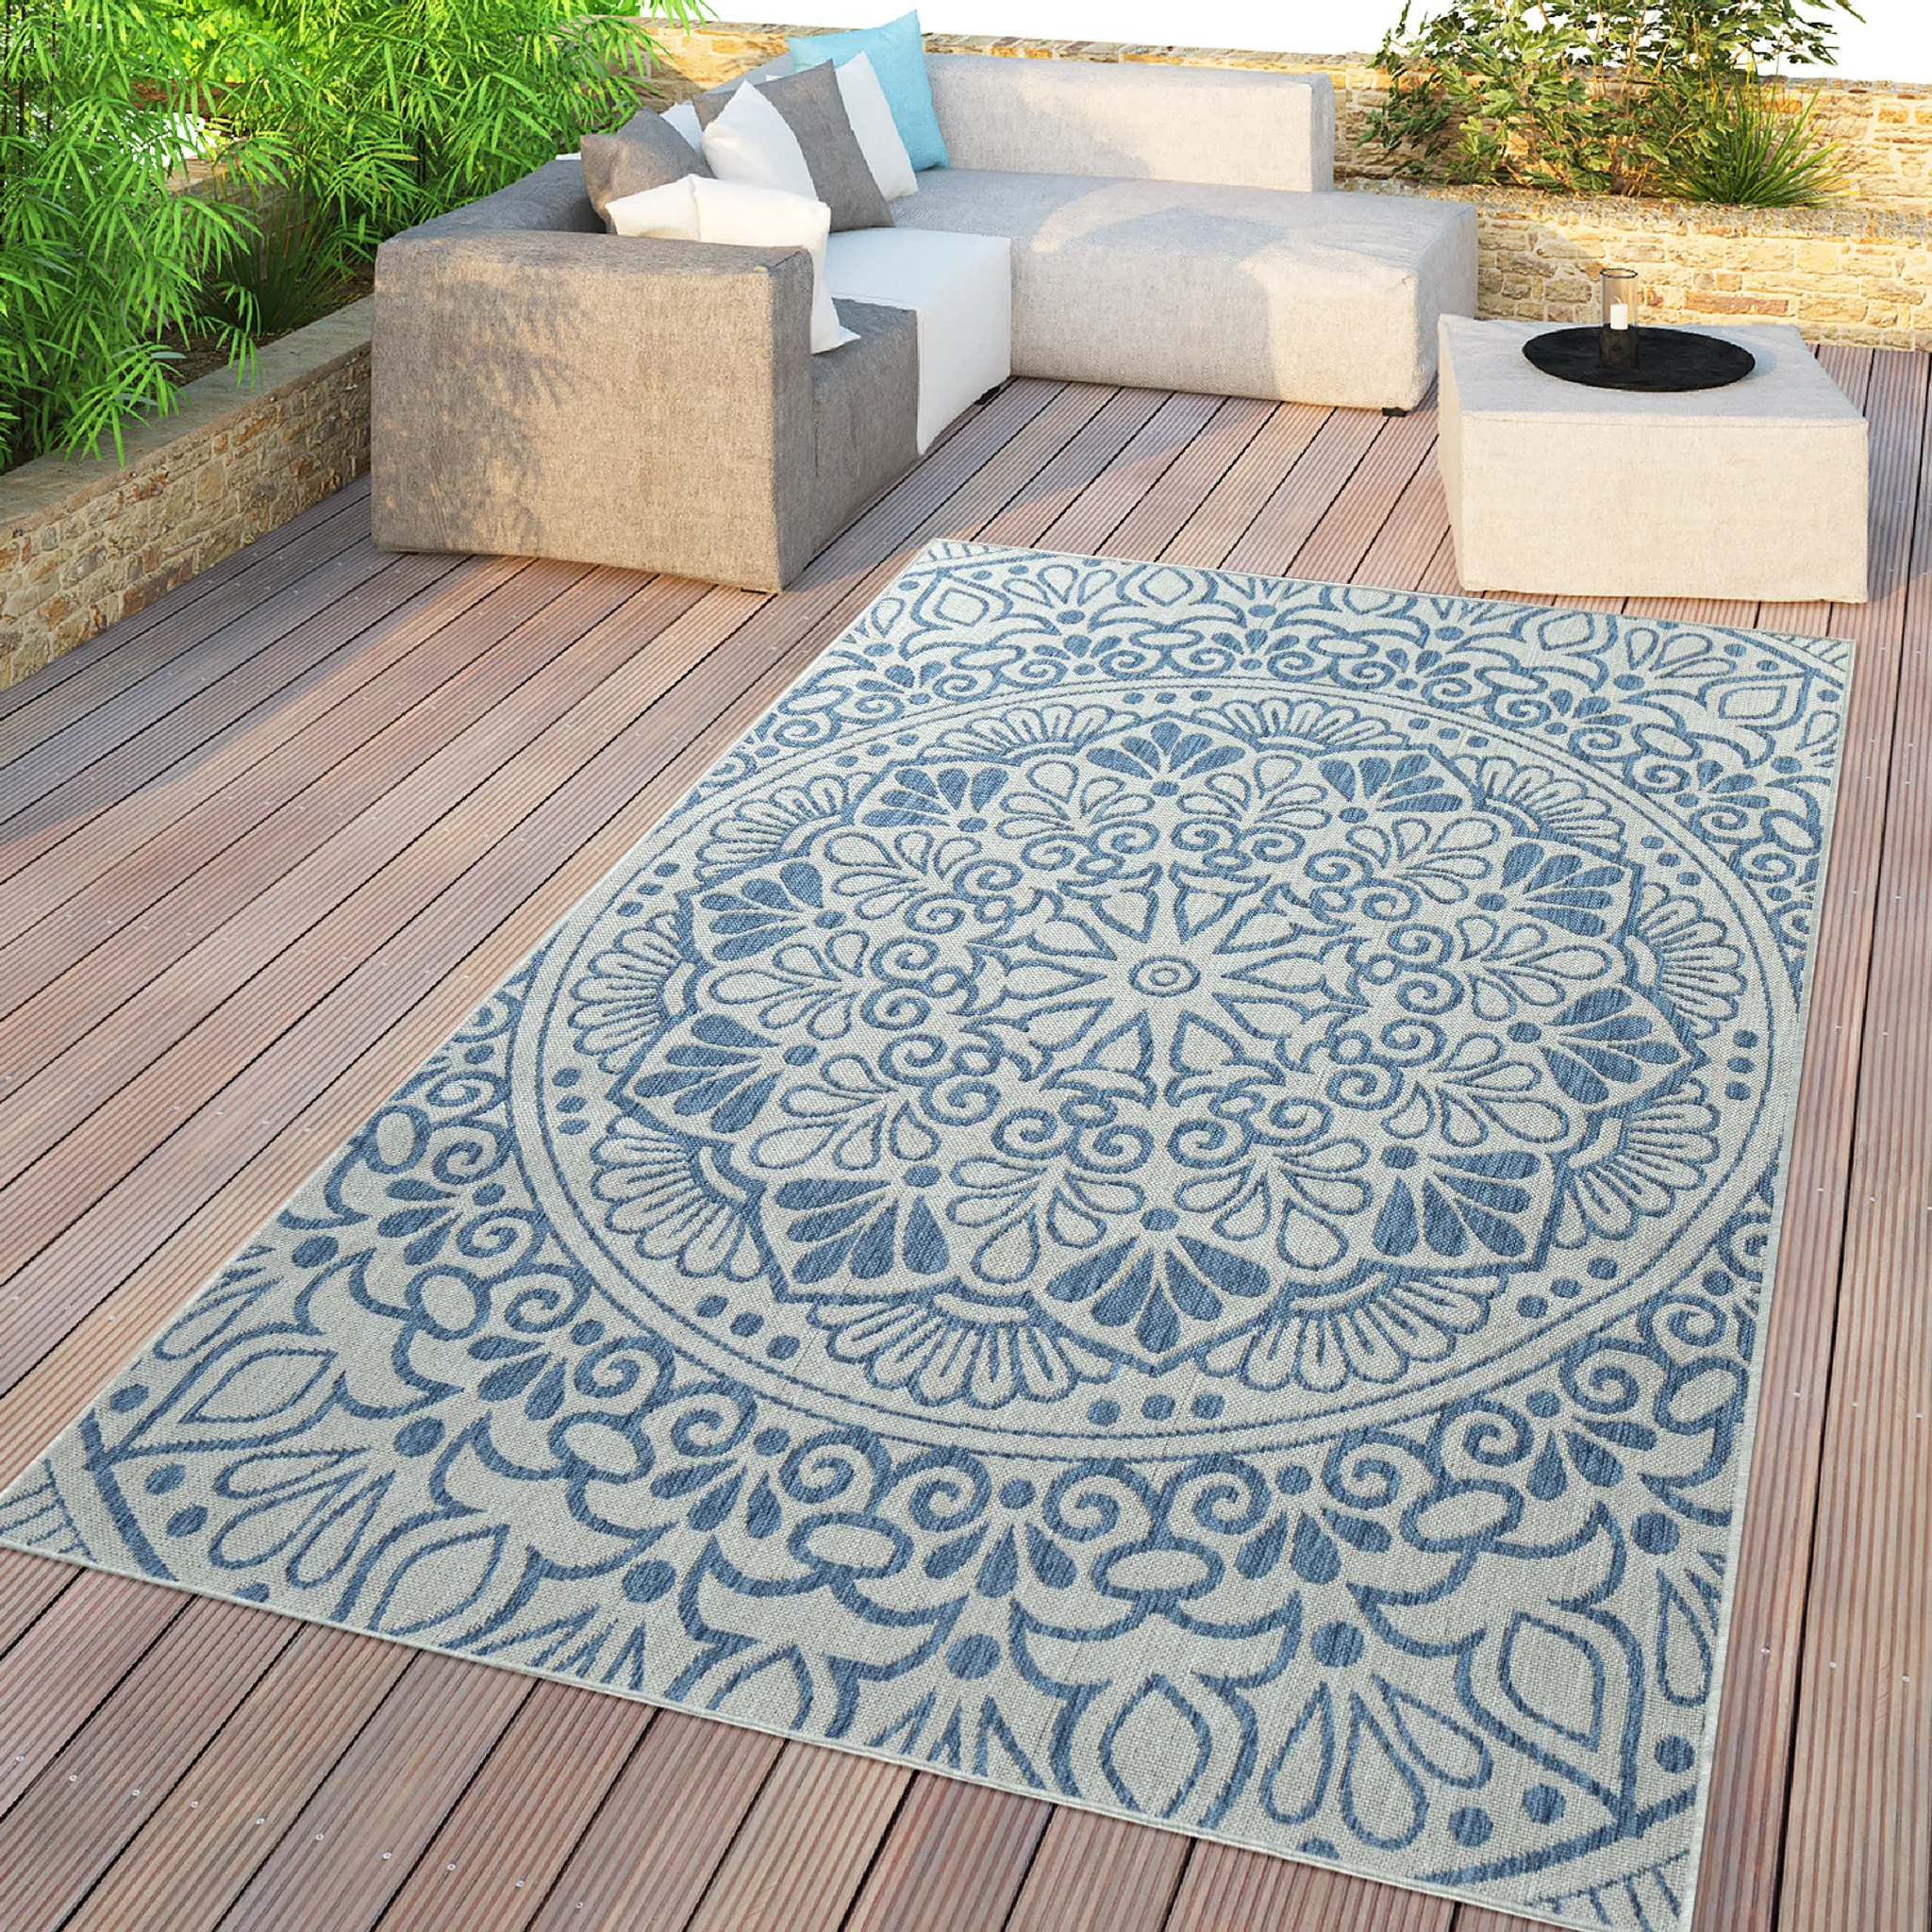 Blau & In- cm Mit Outdoor-Teppich, Größe Für 120x170 Terrasse In Orient-Design, Und Balkon